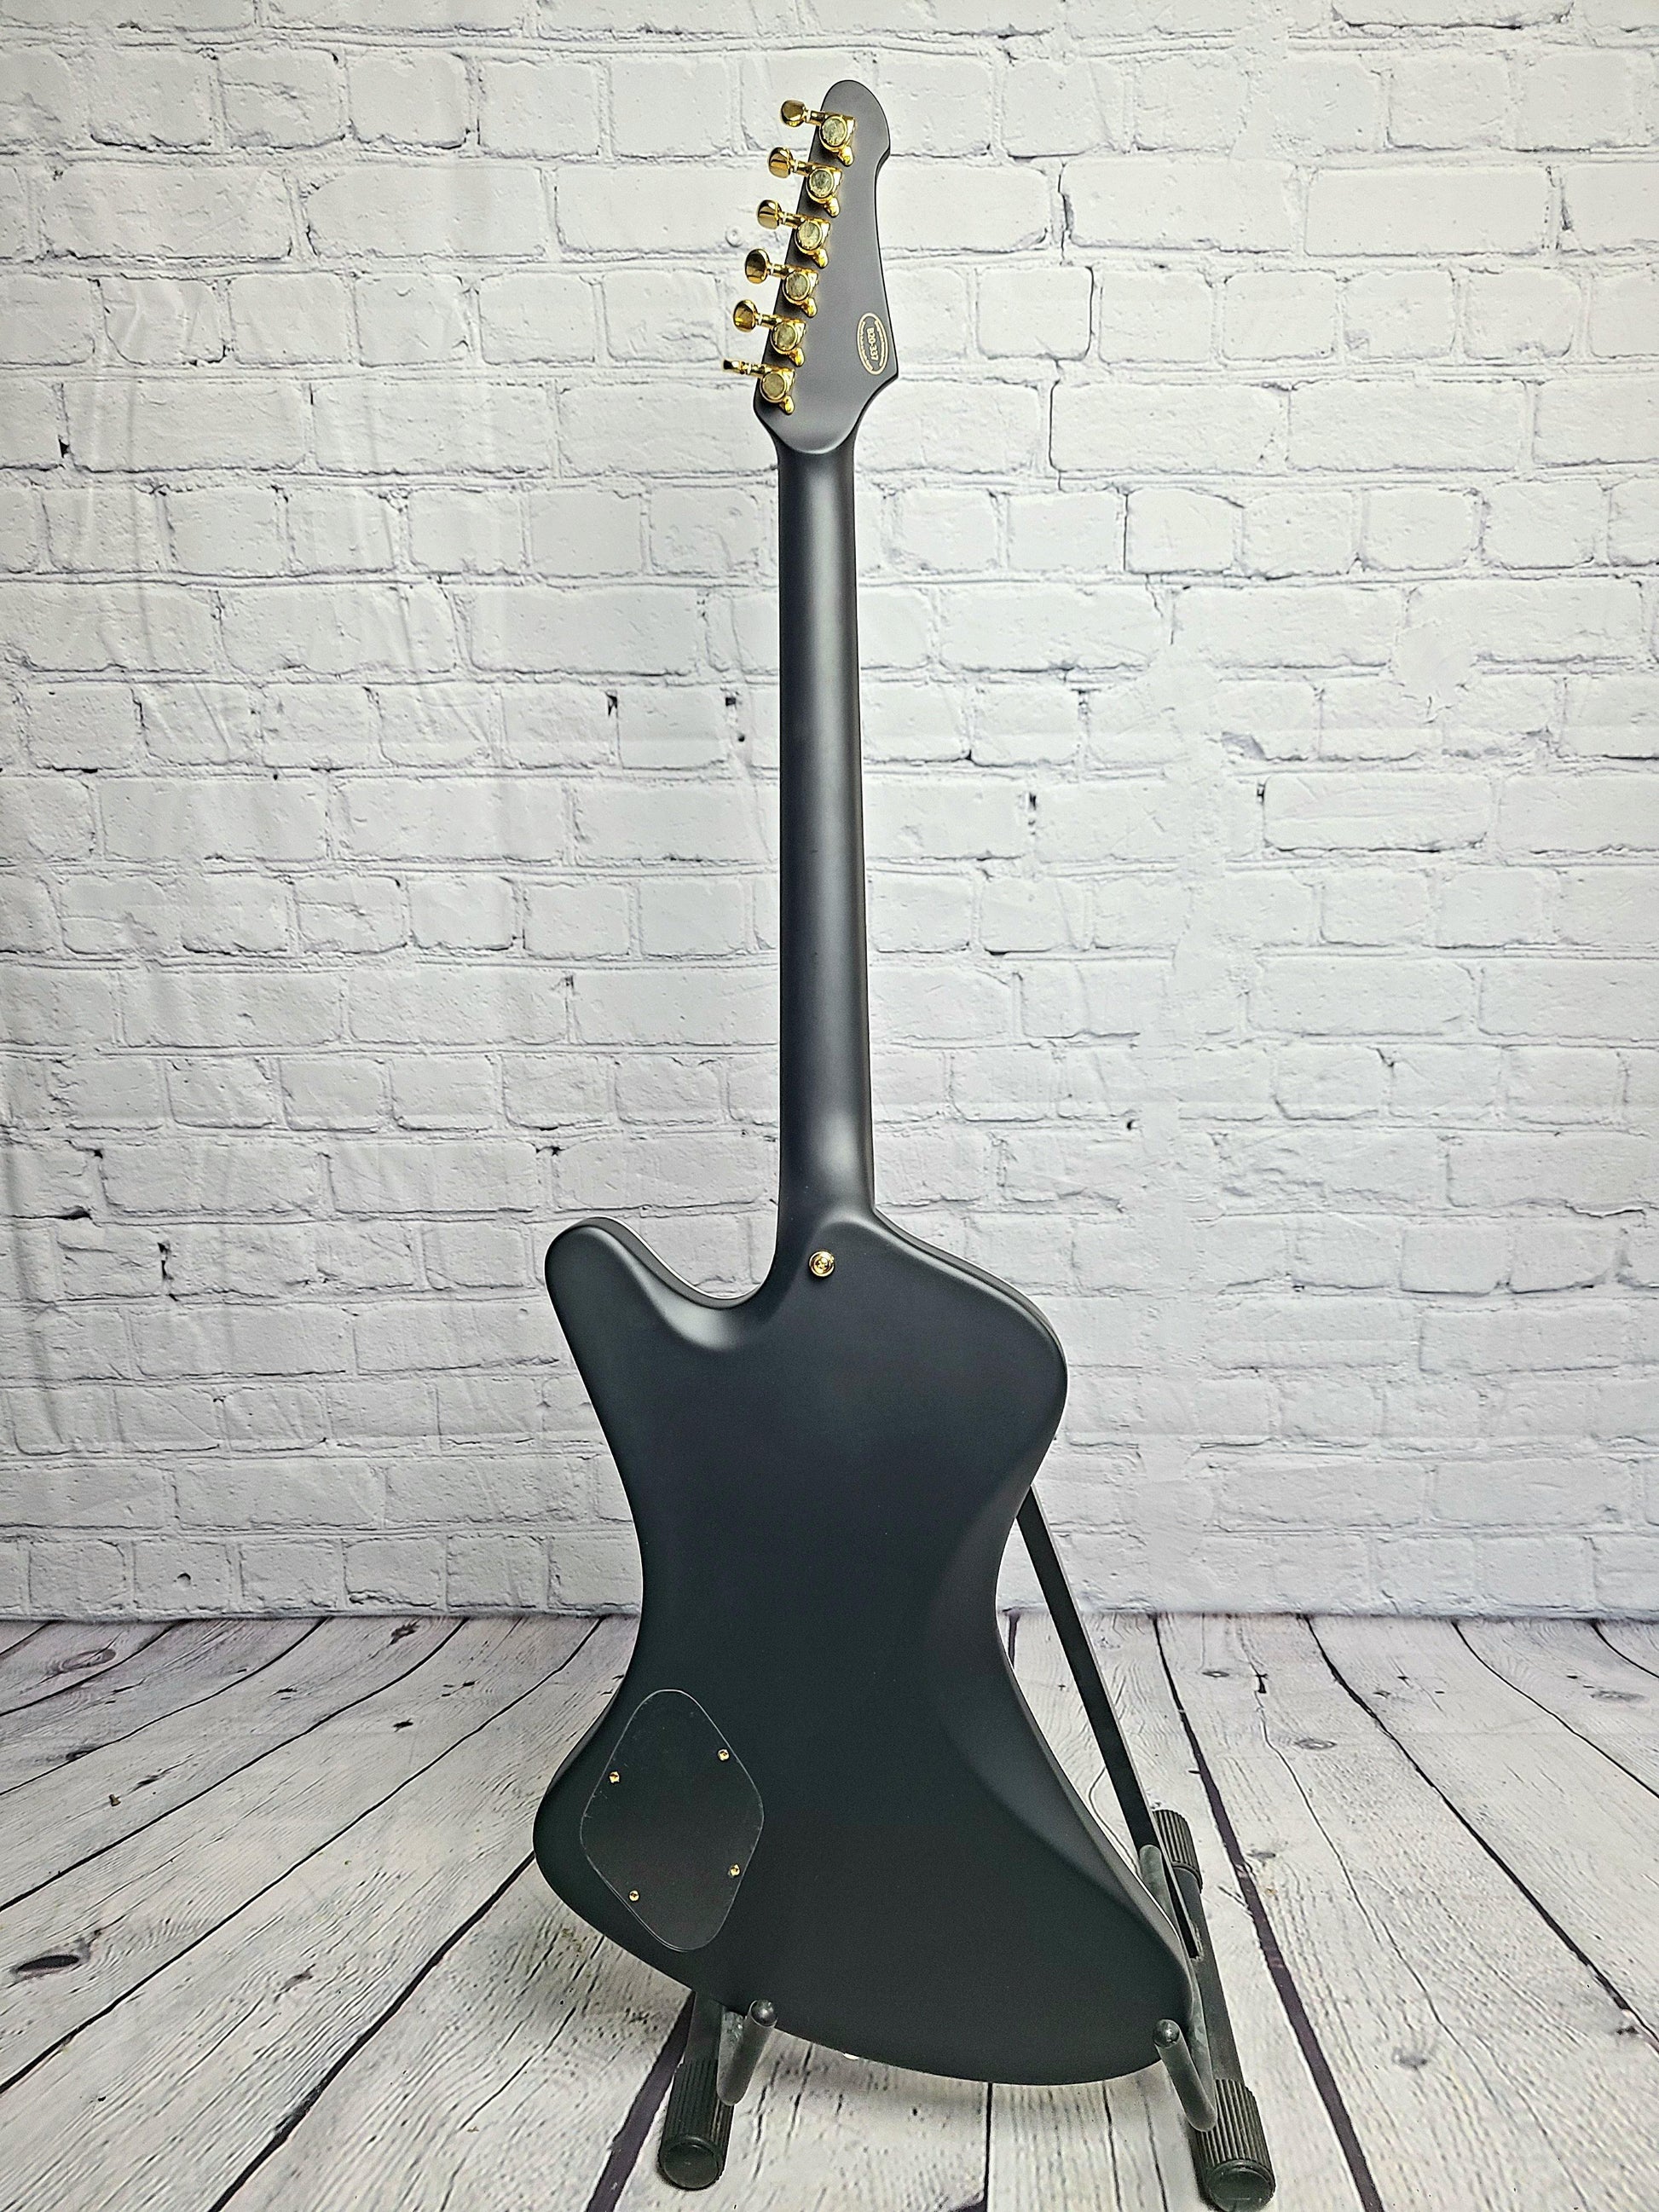 Balaguer Hyperion Deluxe Select Satin Black - Guitar Brando